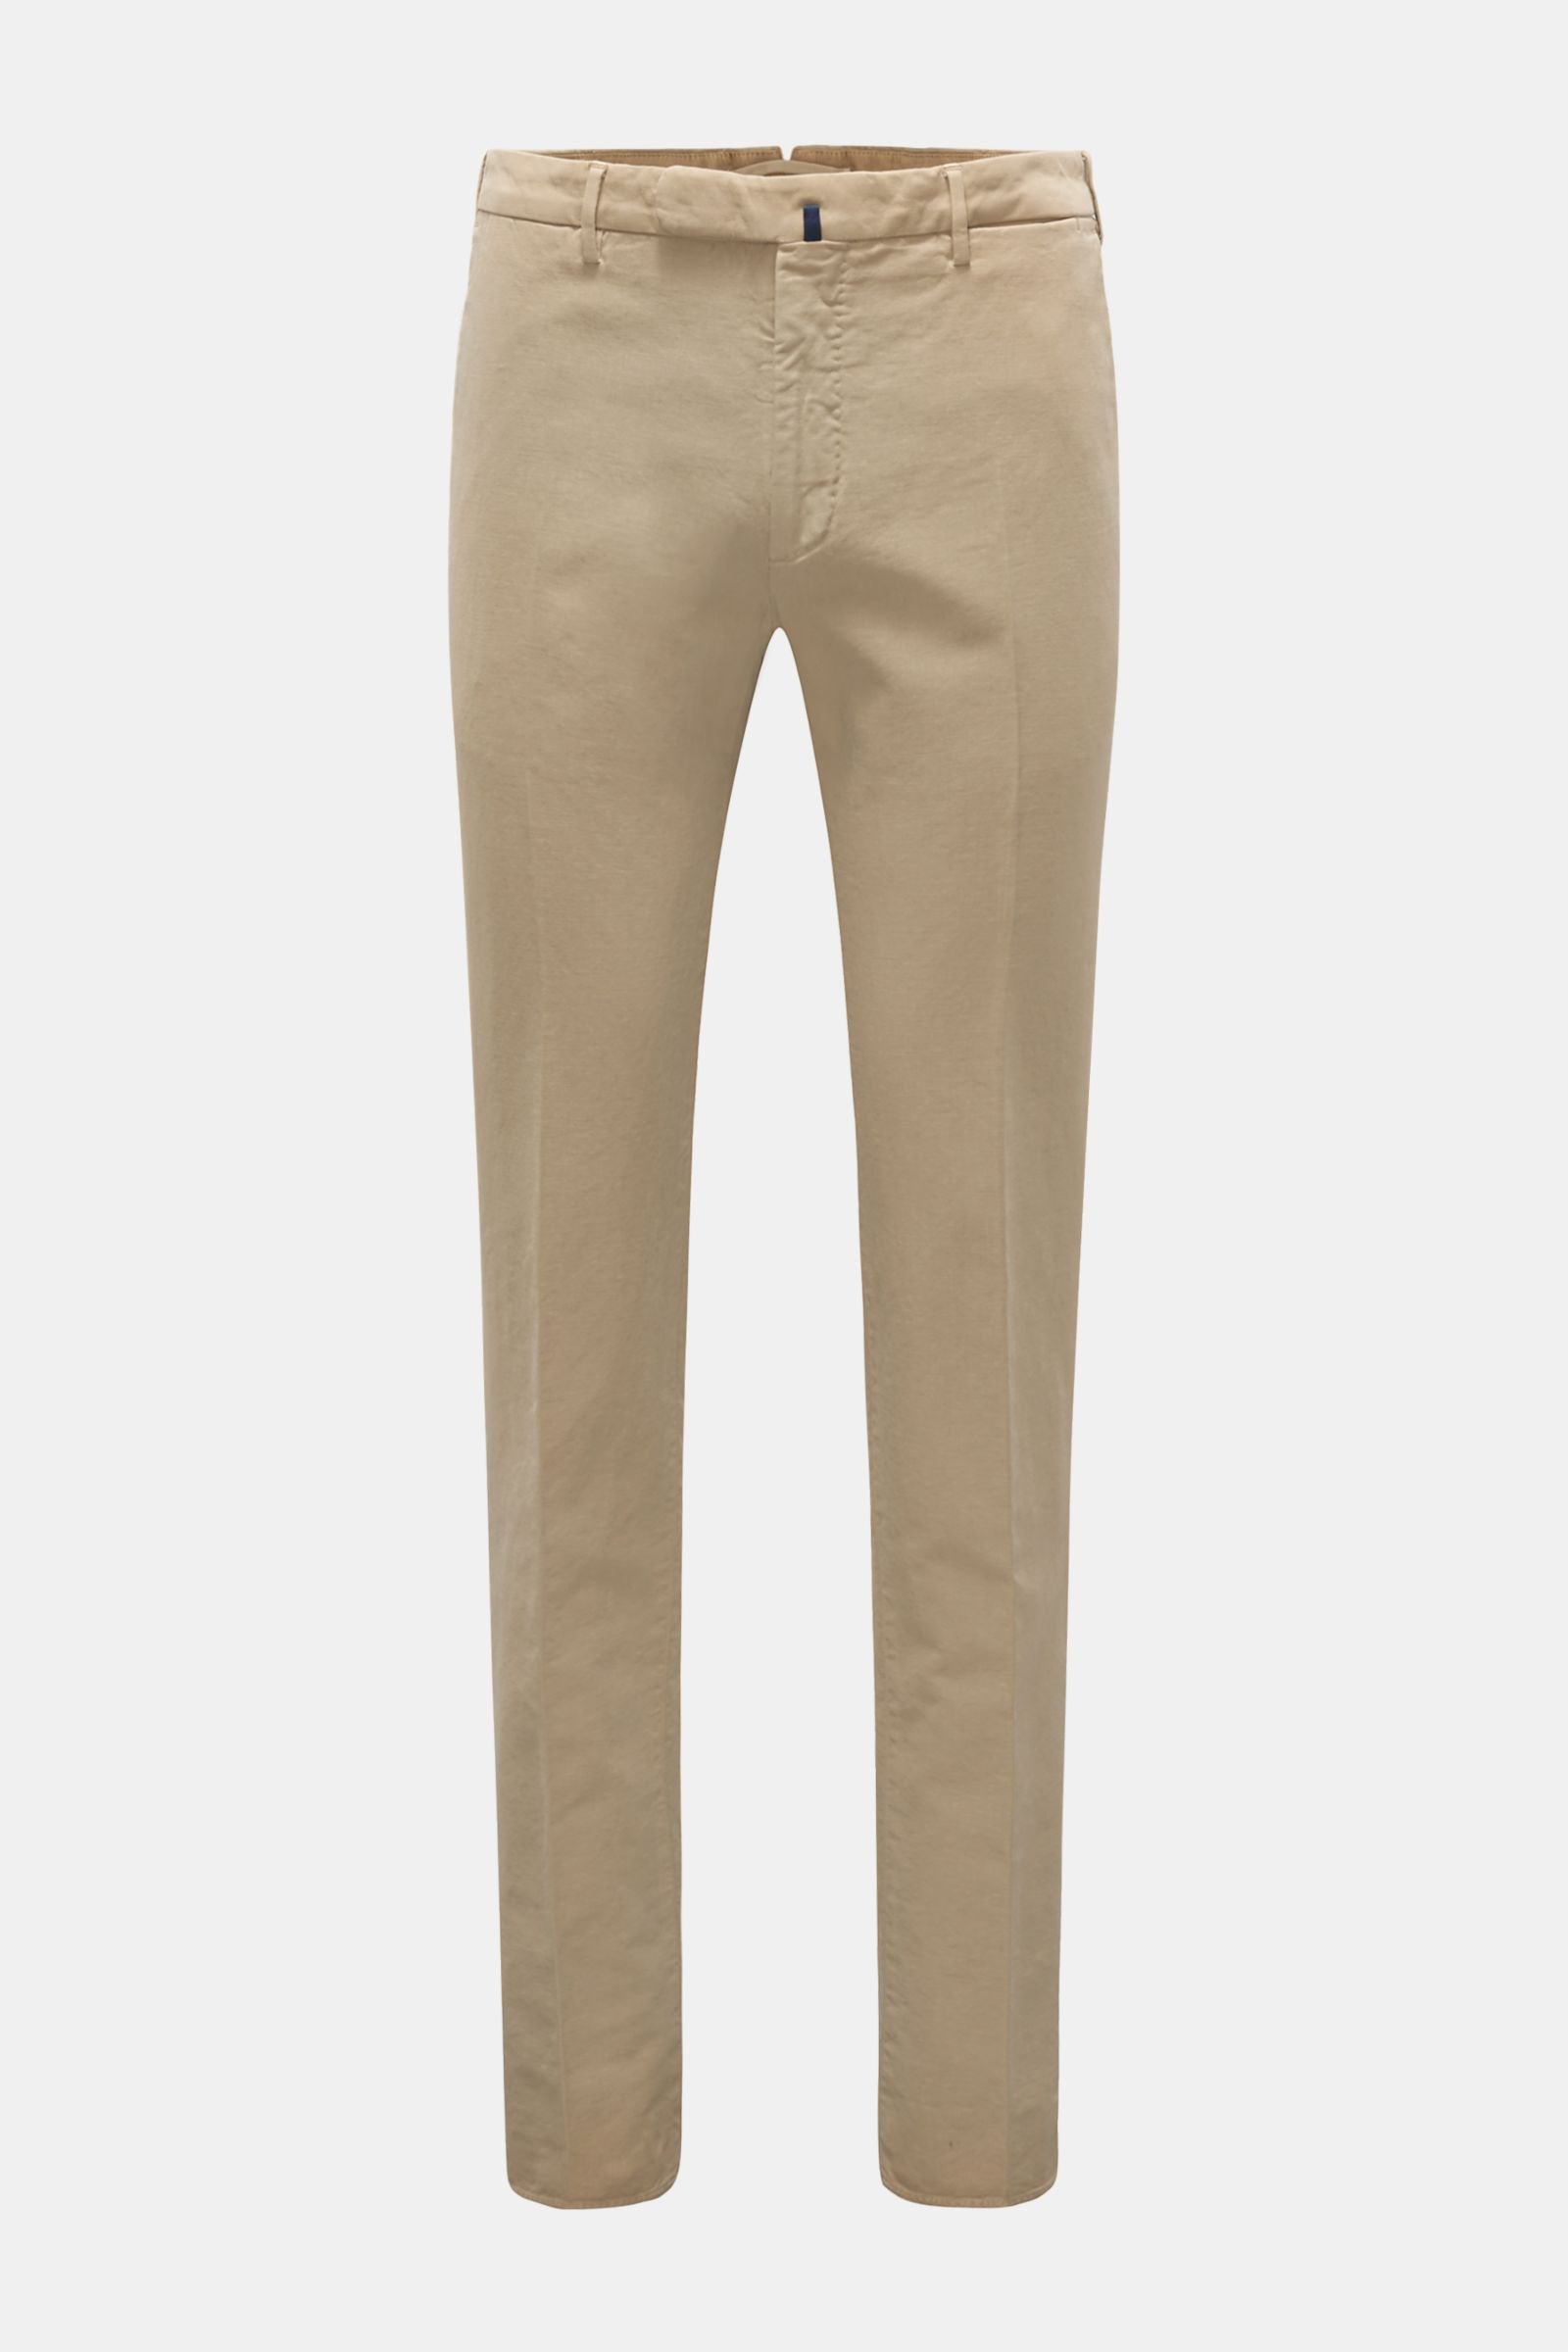 Fustian trousers 'Slim Fit' beige